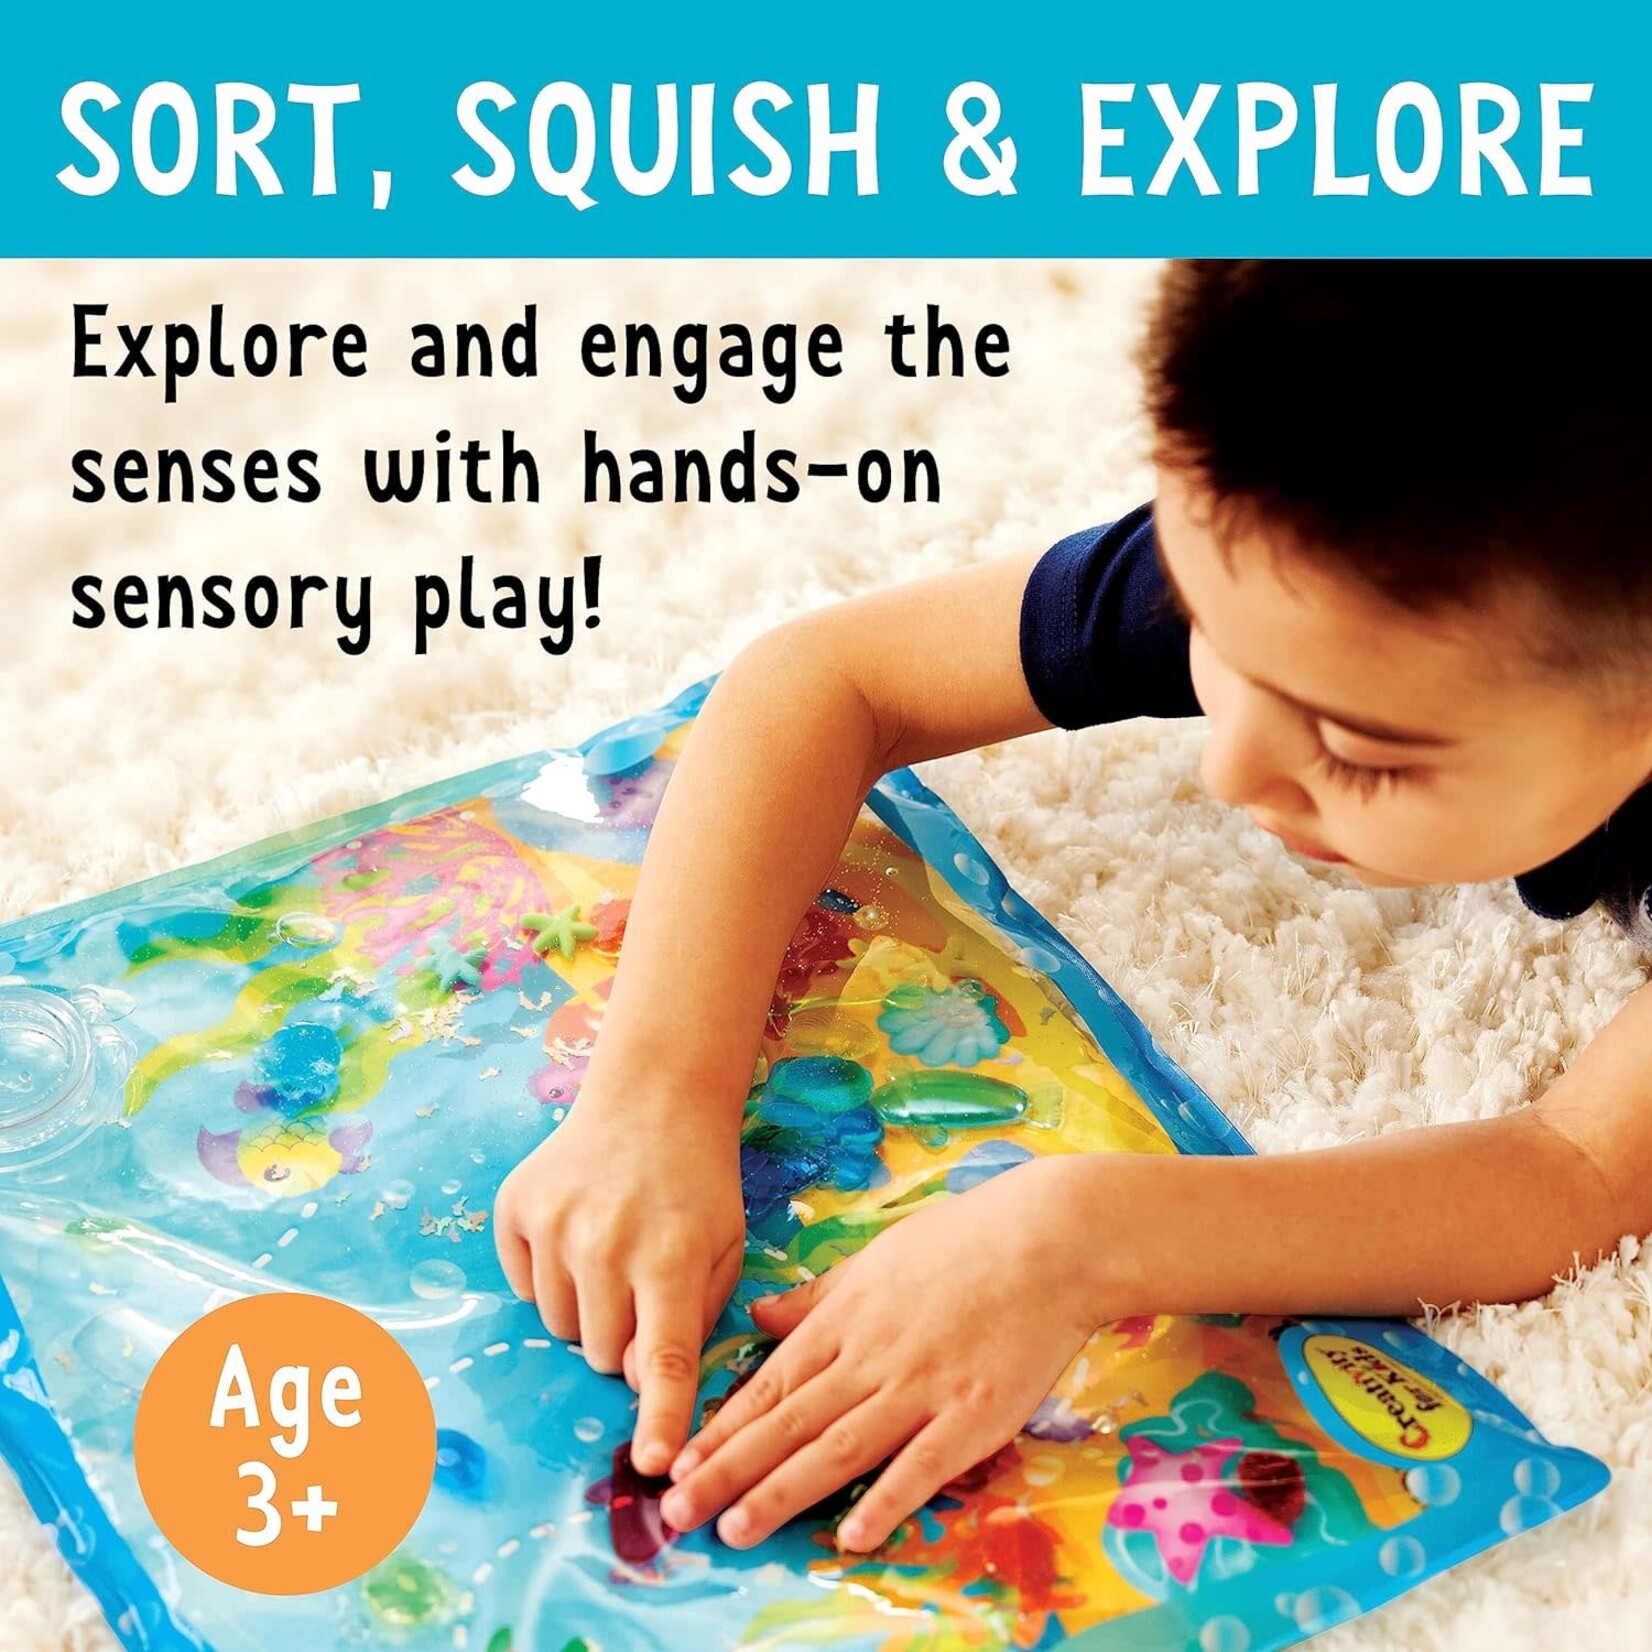 Creativity for Kids Sensory Squish Bag Ocean